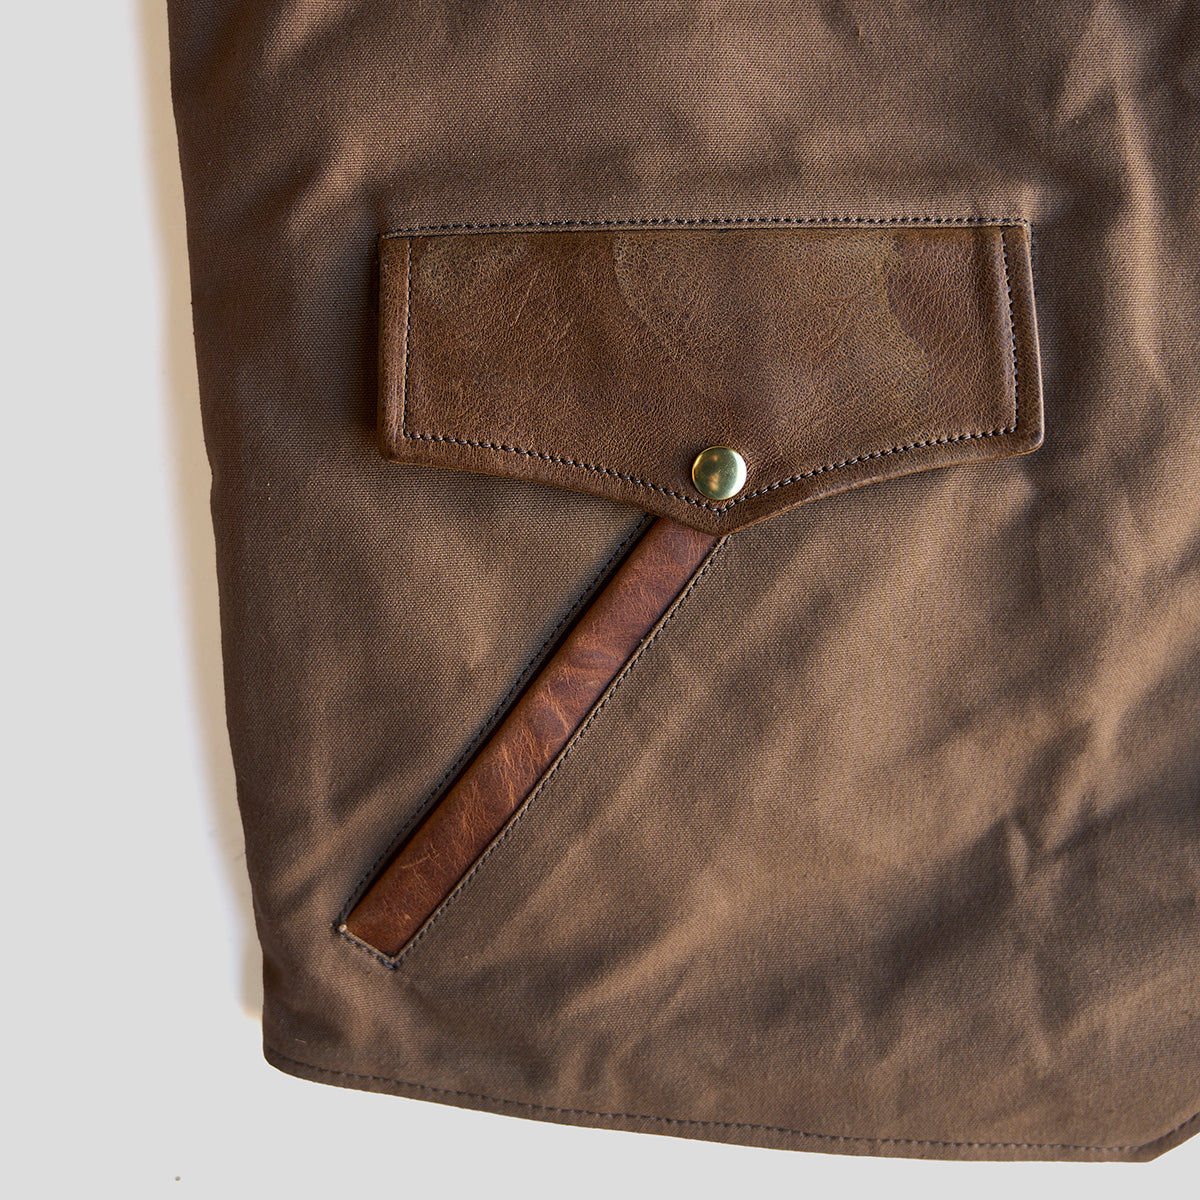 Circle-C Deerskin & Canvas Brown Vest